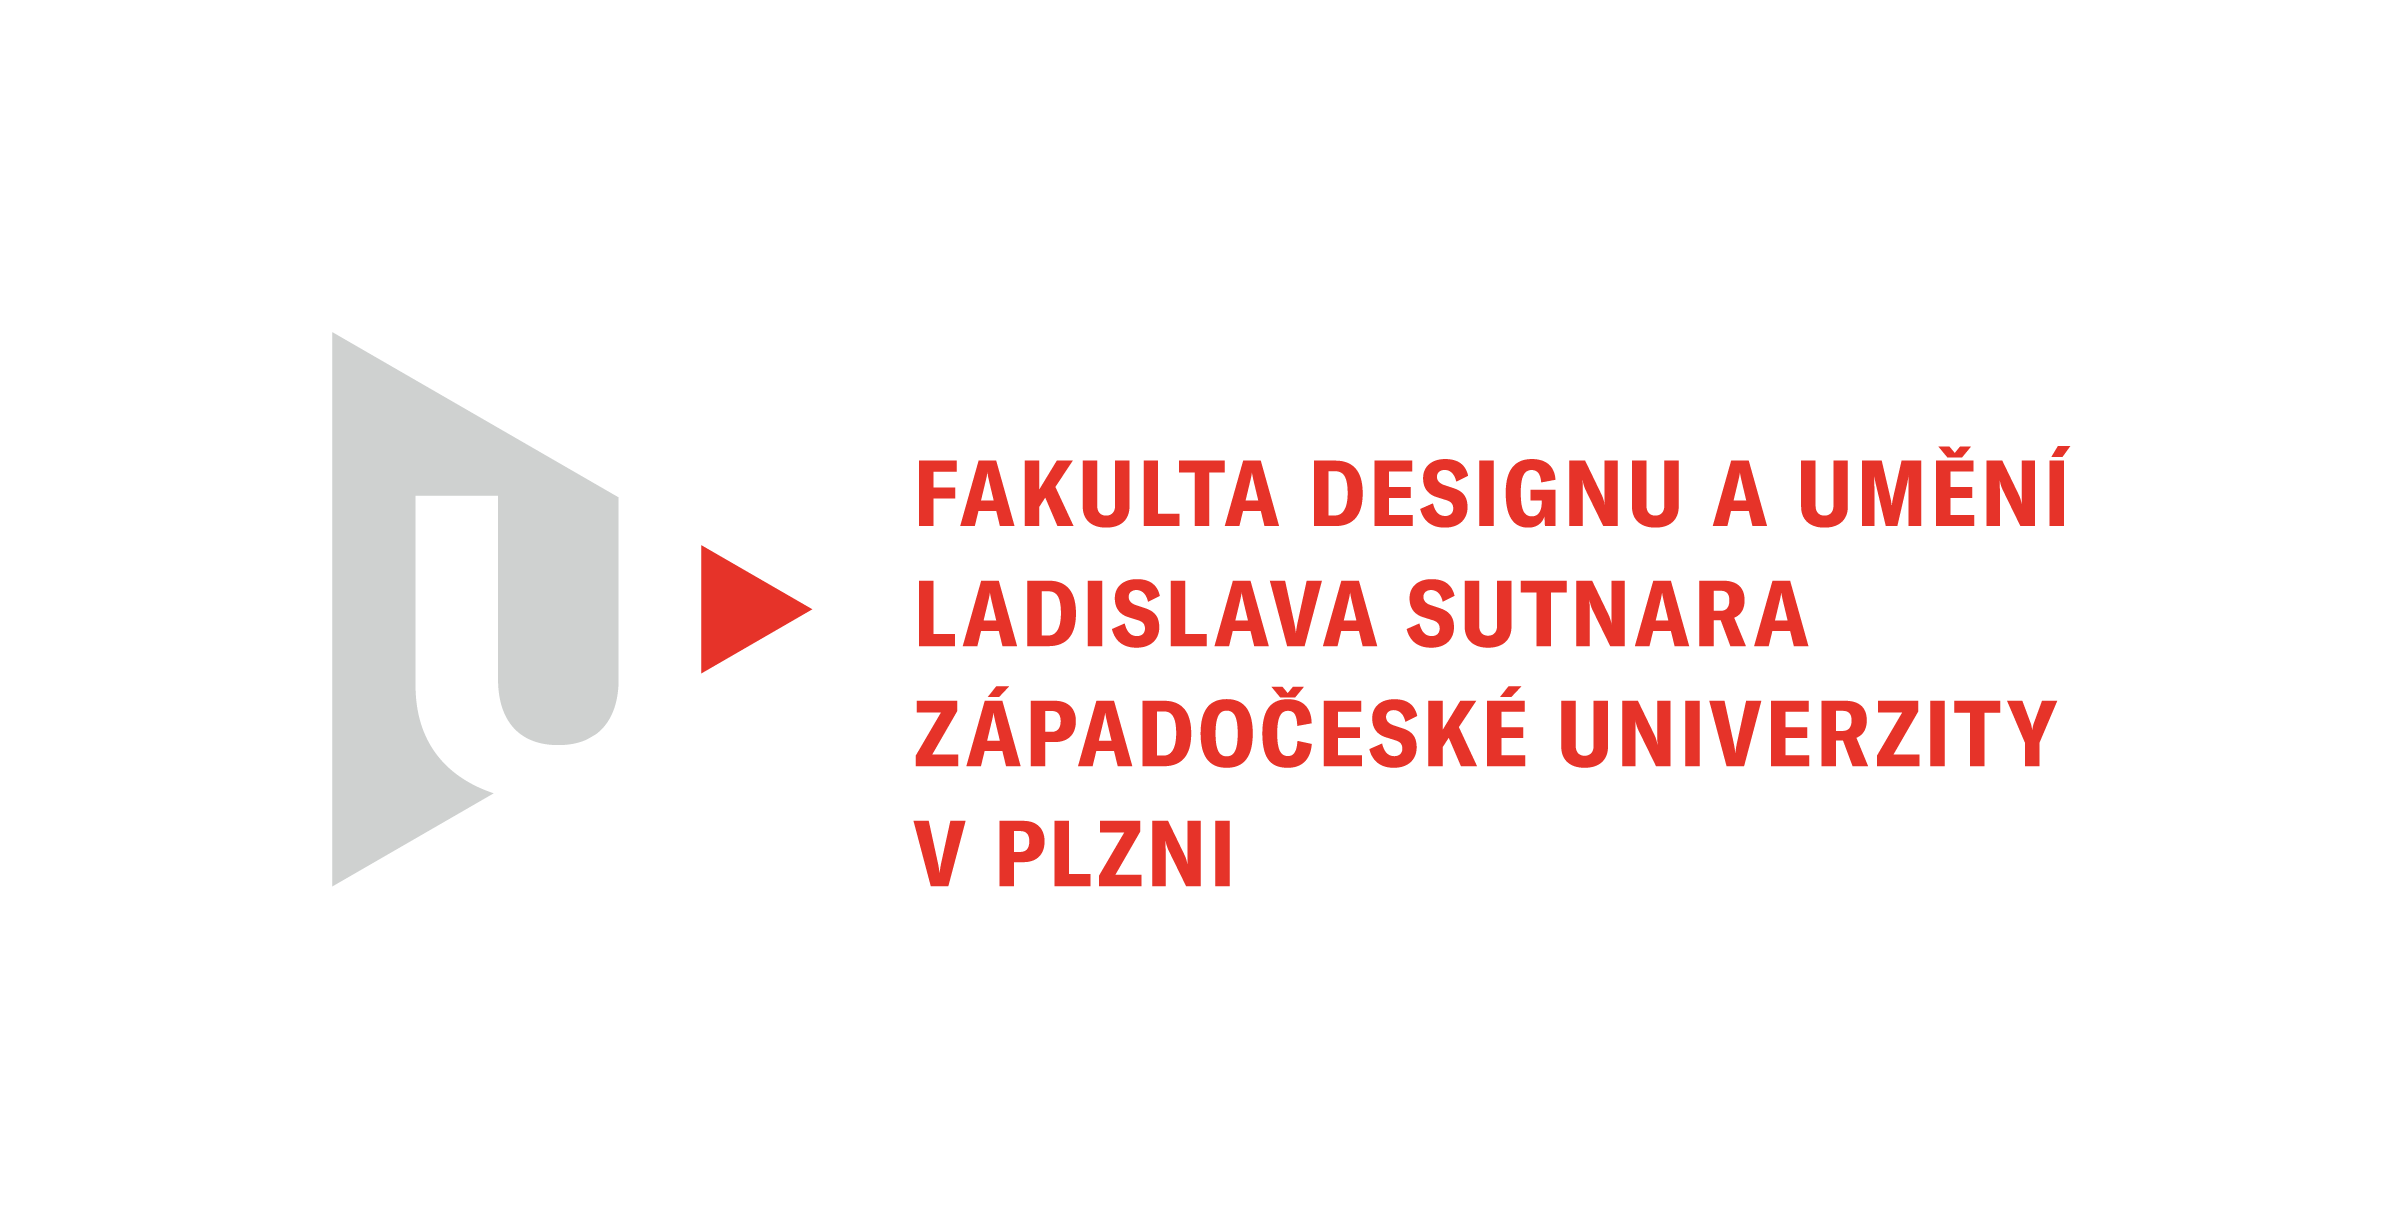 Fakulta designu a umění Ladislava Sutnara, Západočeská univerzita v Plzni